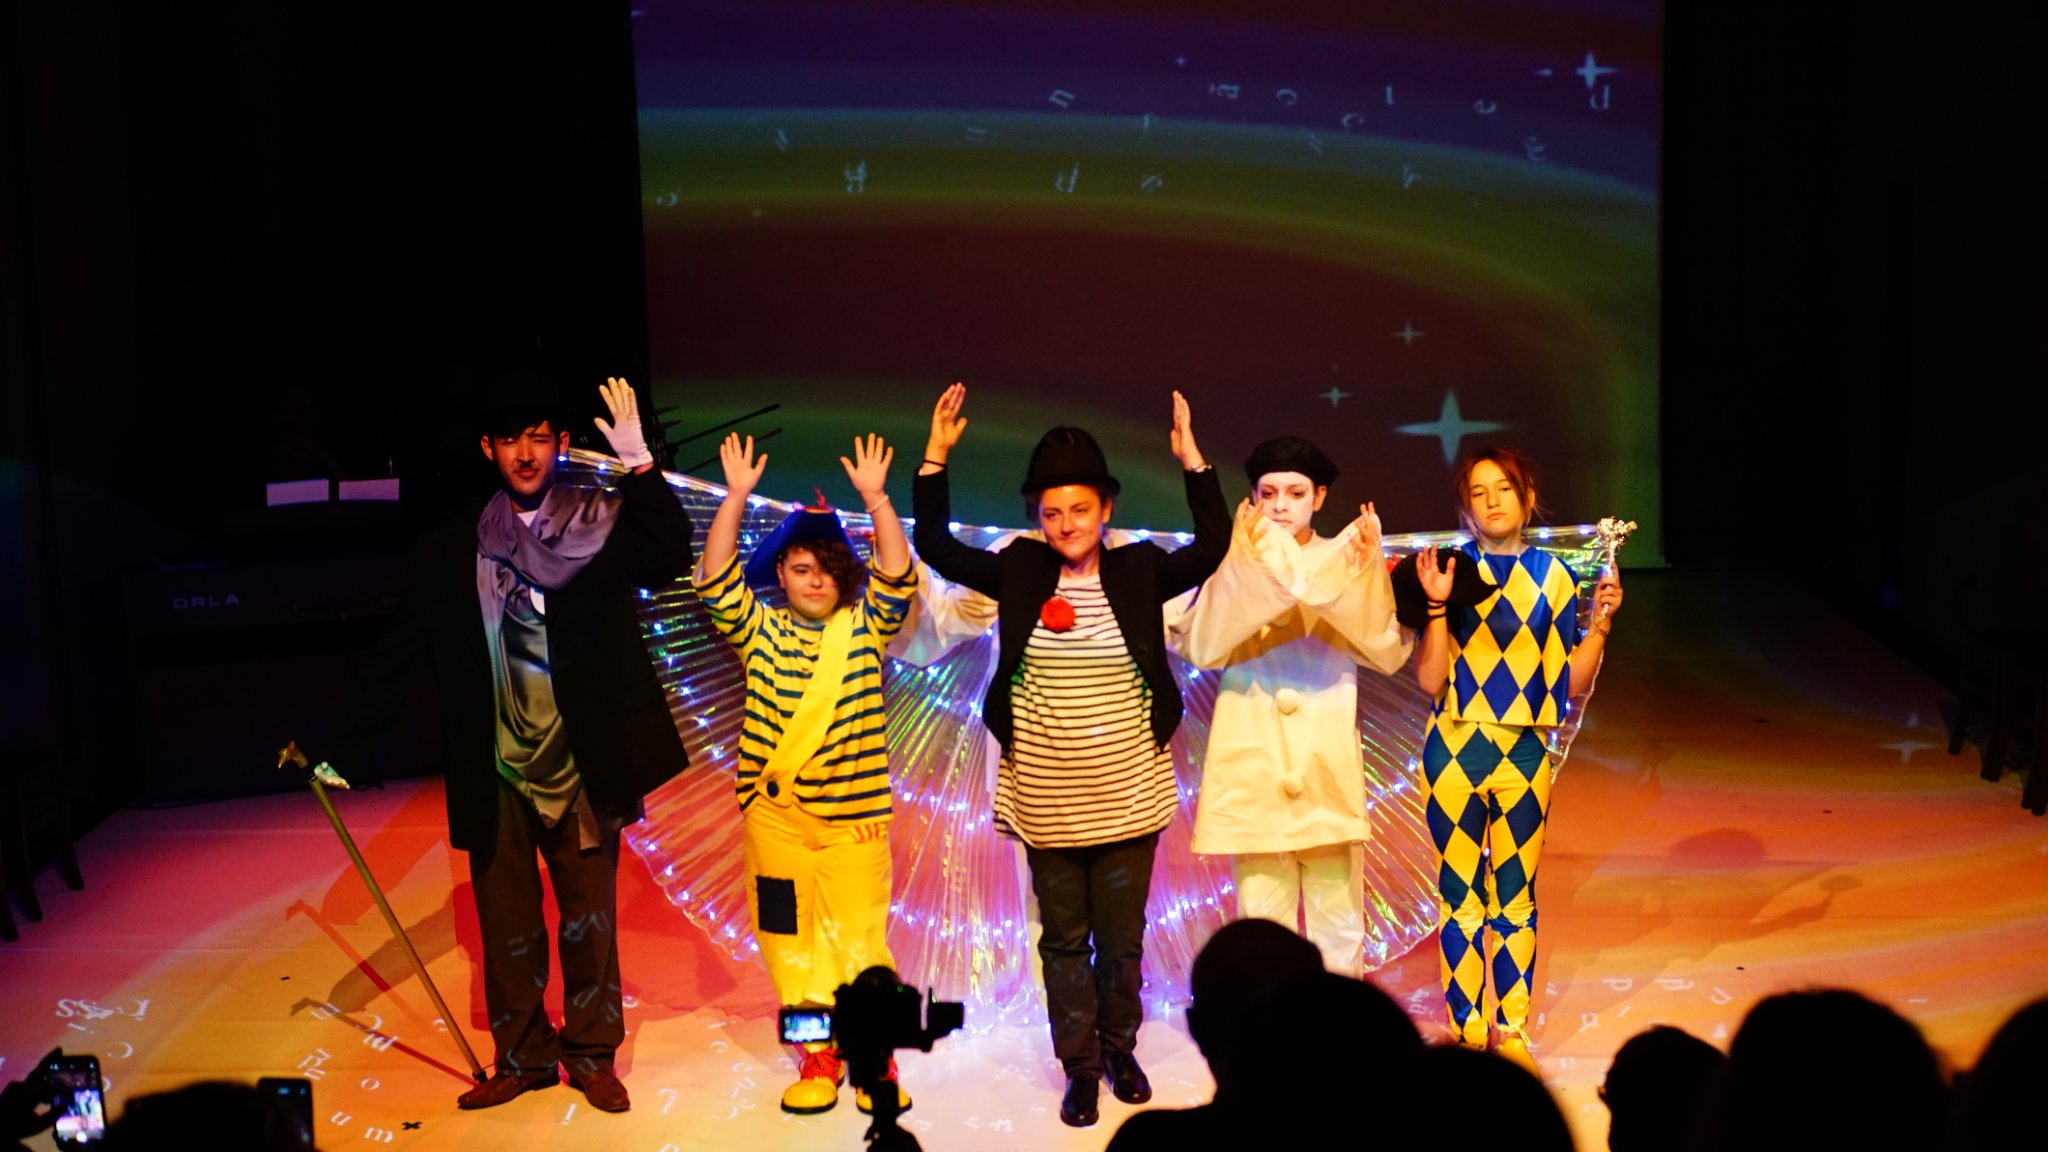 Zdjęcie prezentuje grupę ludzi znajdujących się na scenie w kolorowym świetle scenicznym